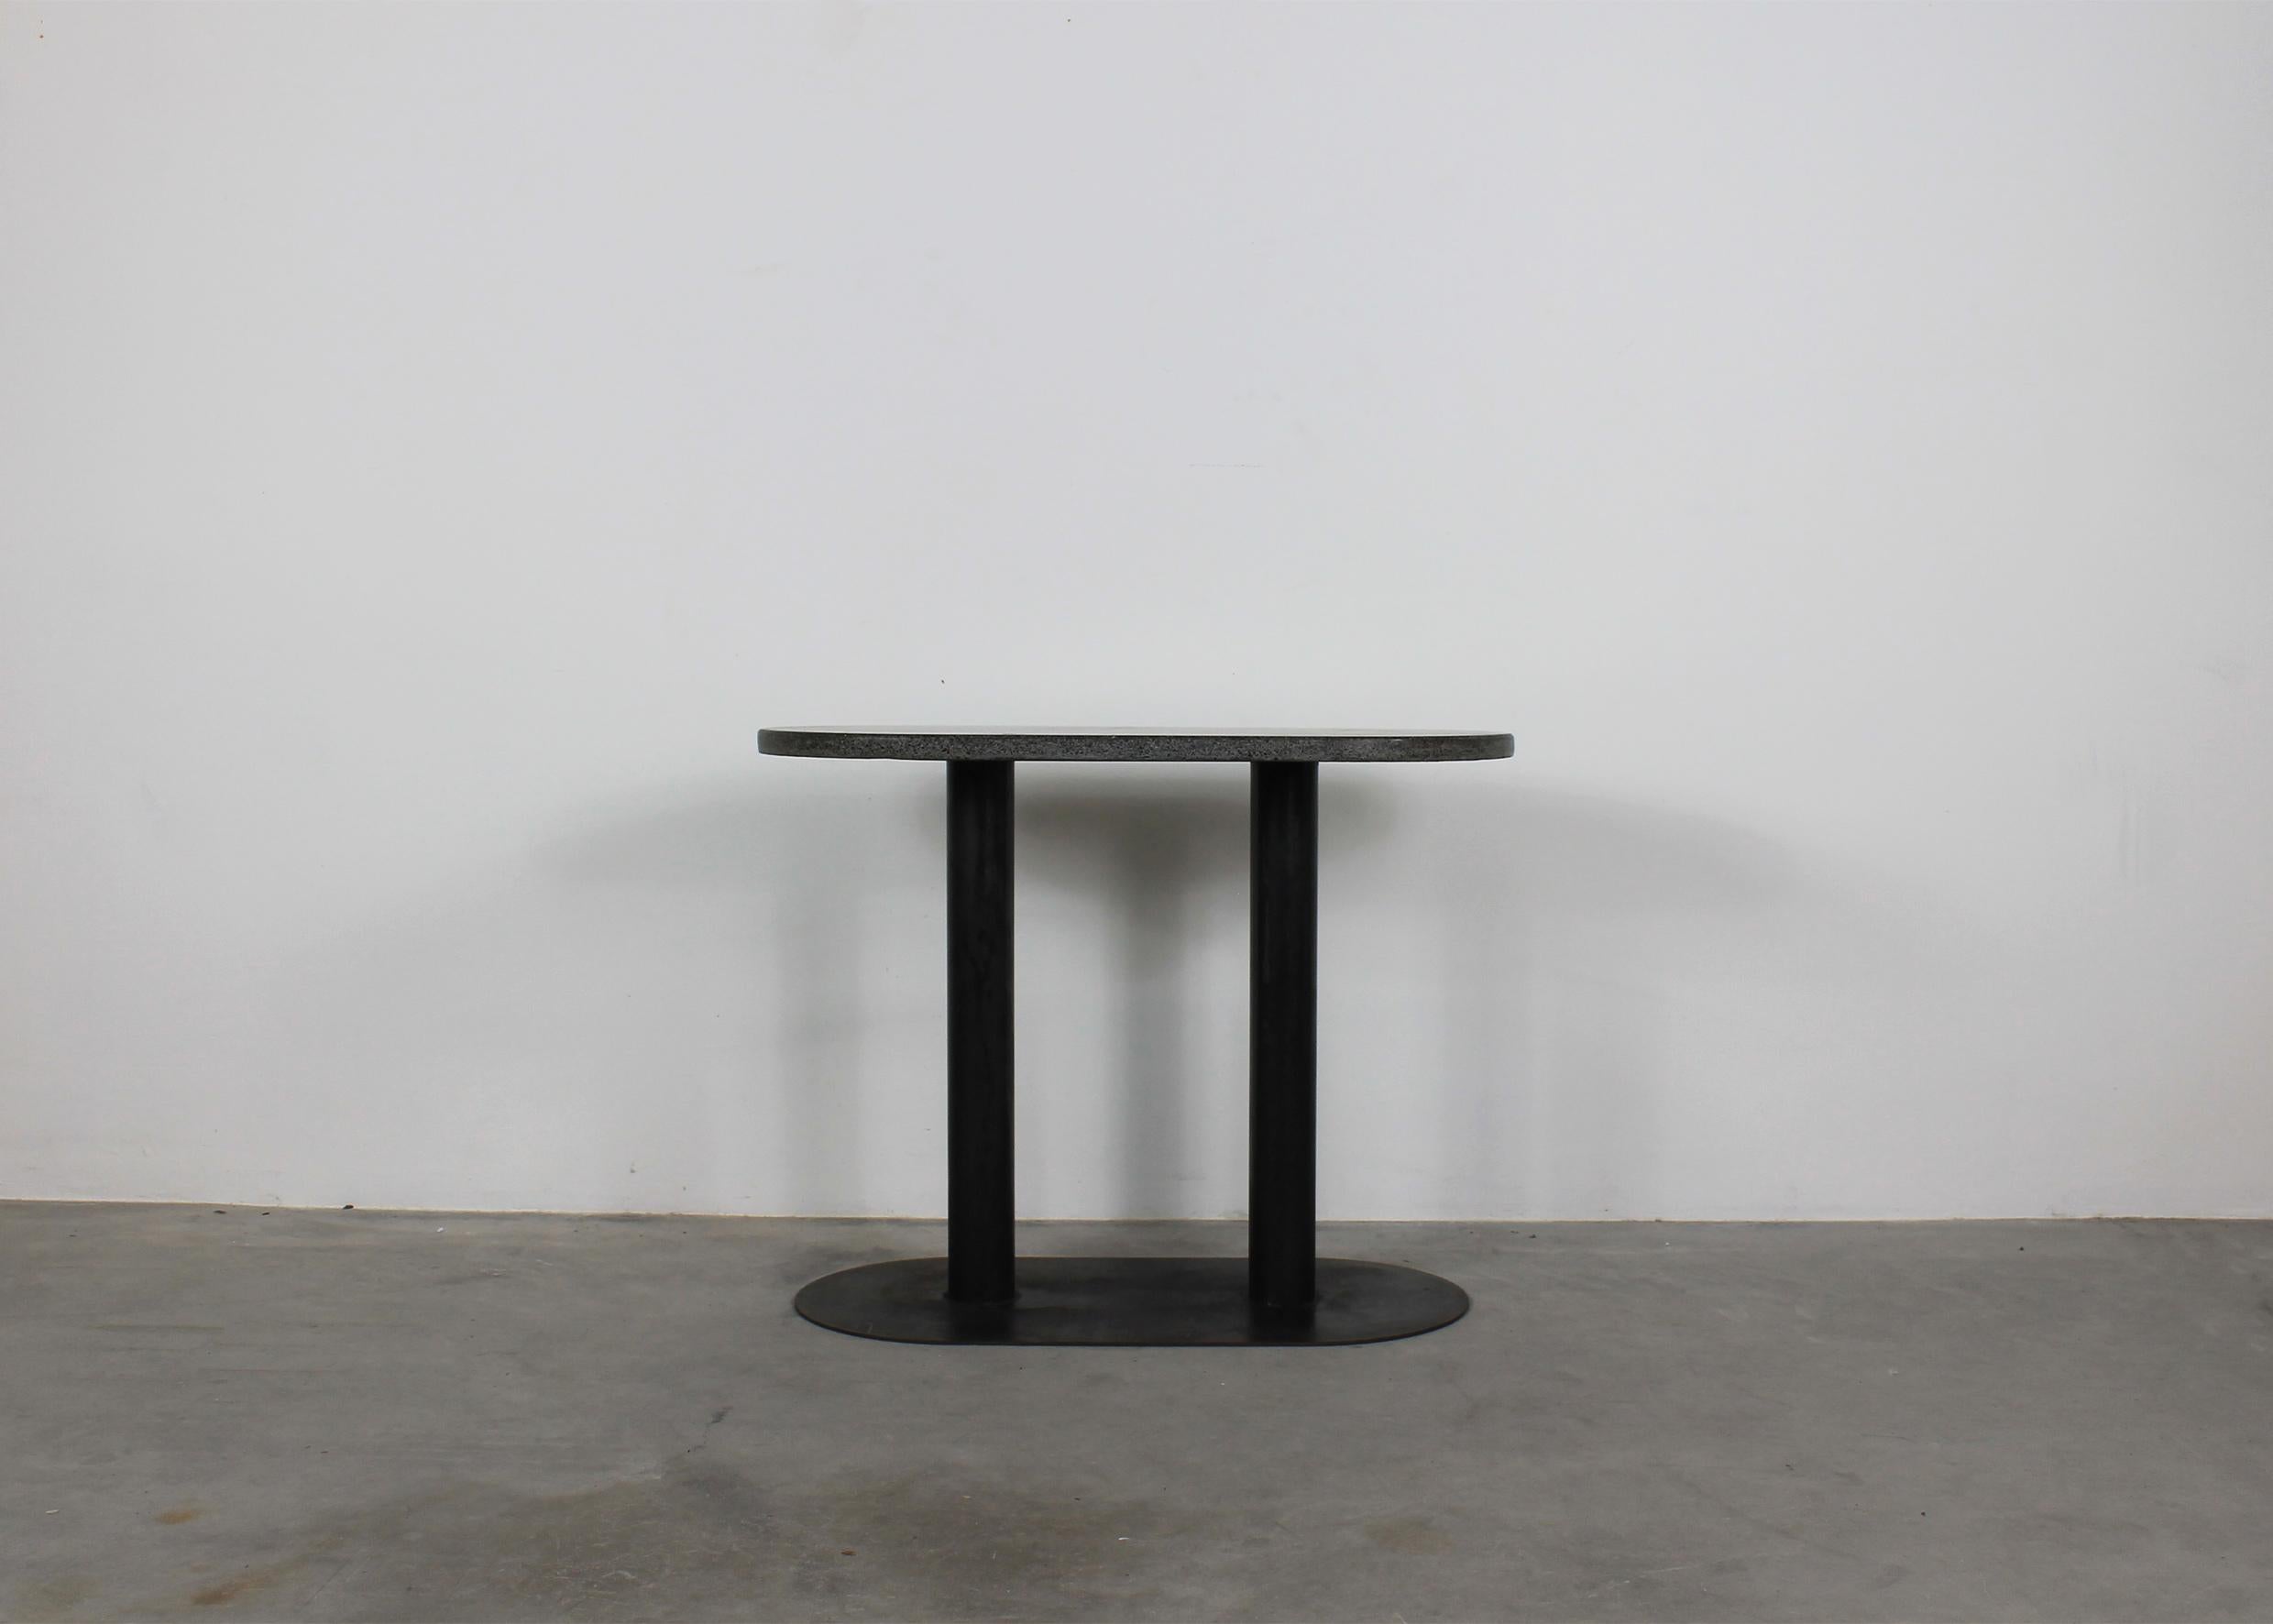 Table console avec base en métal laqué noir et plateau ovoïde en granit, conçue à l'origine par Aimaro Oreglia d'Isola et Roberto Gabetti pour le centre résidentiel Talponia d'Ivrea, et fabriquée par Arbo dans les années 1970.

L'activité du Studio